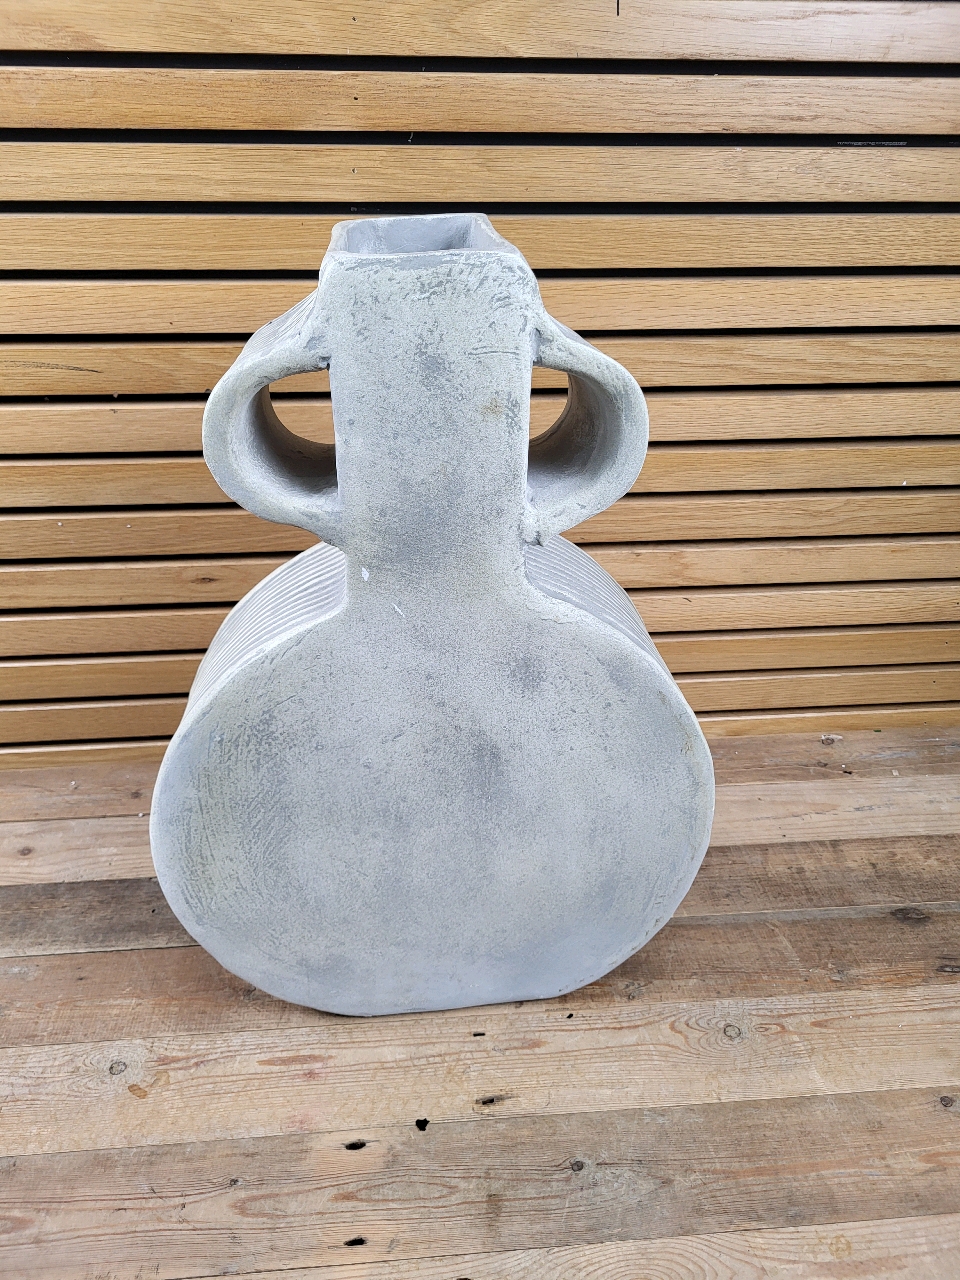 Global Explorer Round Faded White Wash Vase - Image 3 of 3